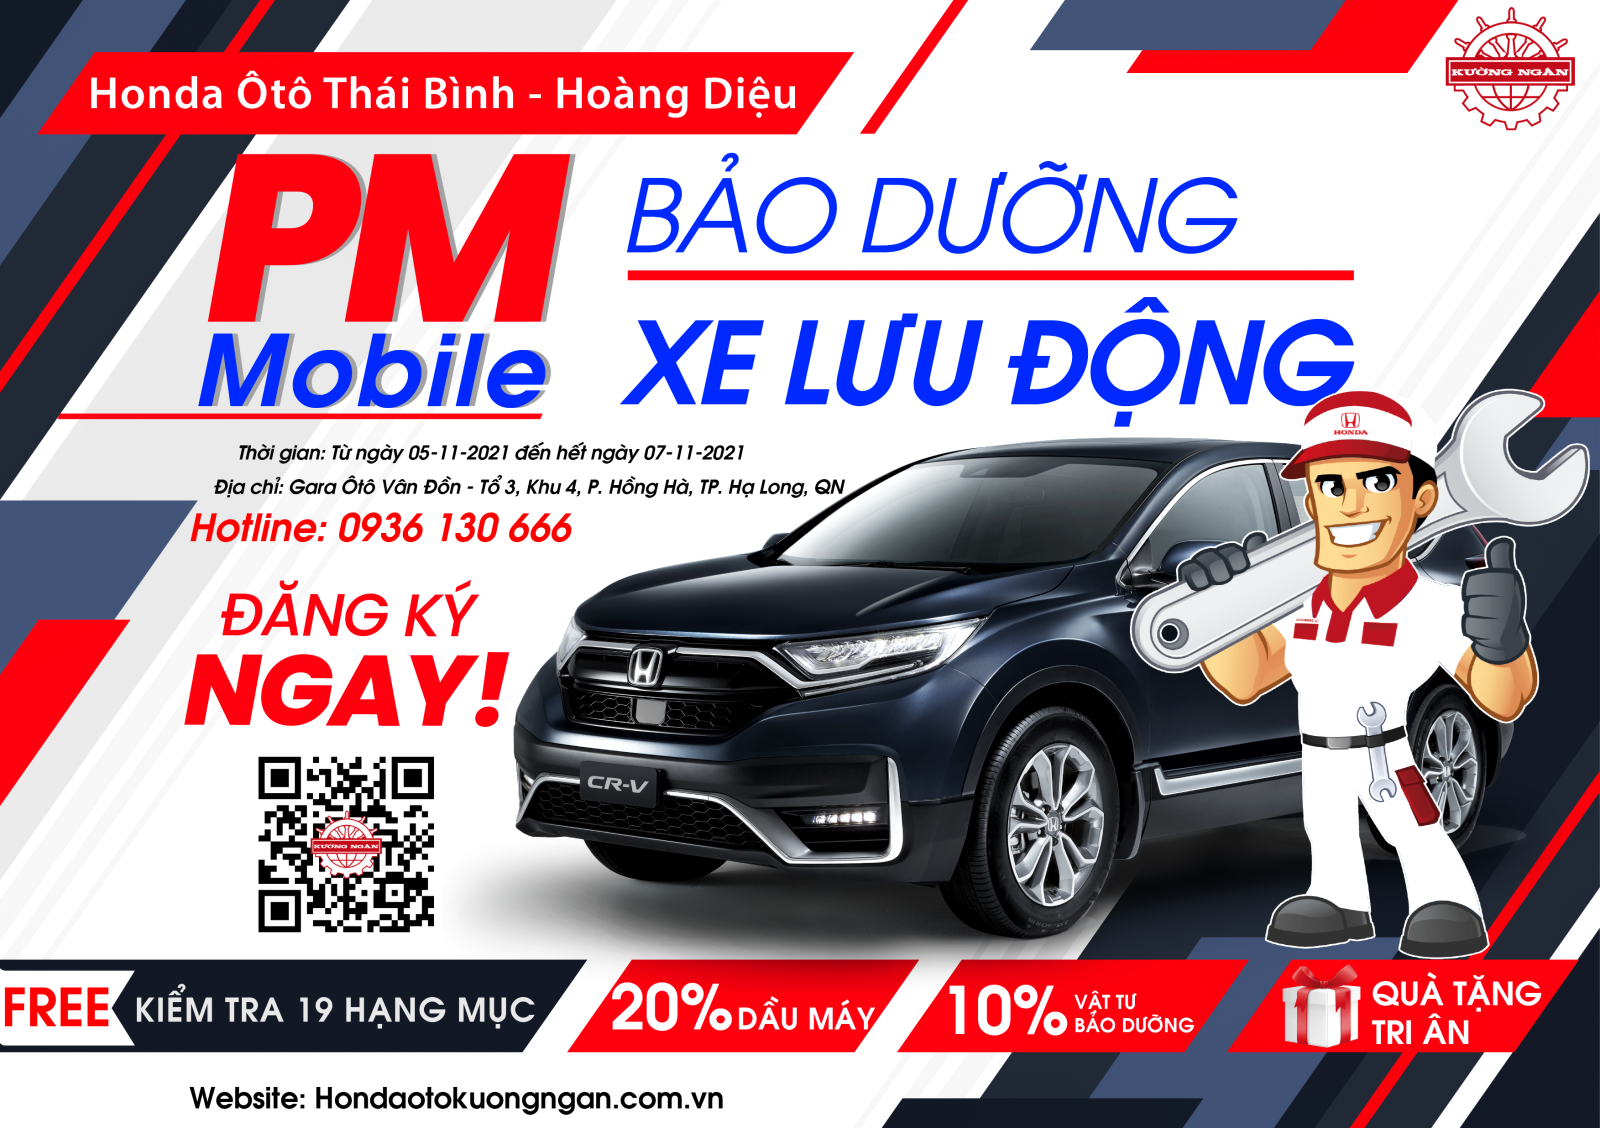 PM Mobile - Bảo dưỡng xe lưu động tại Quảng Ninh